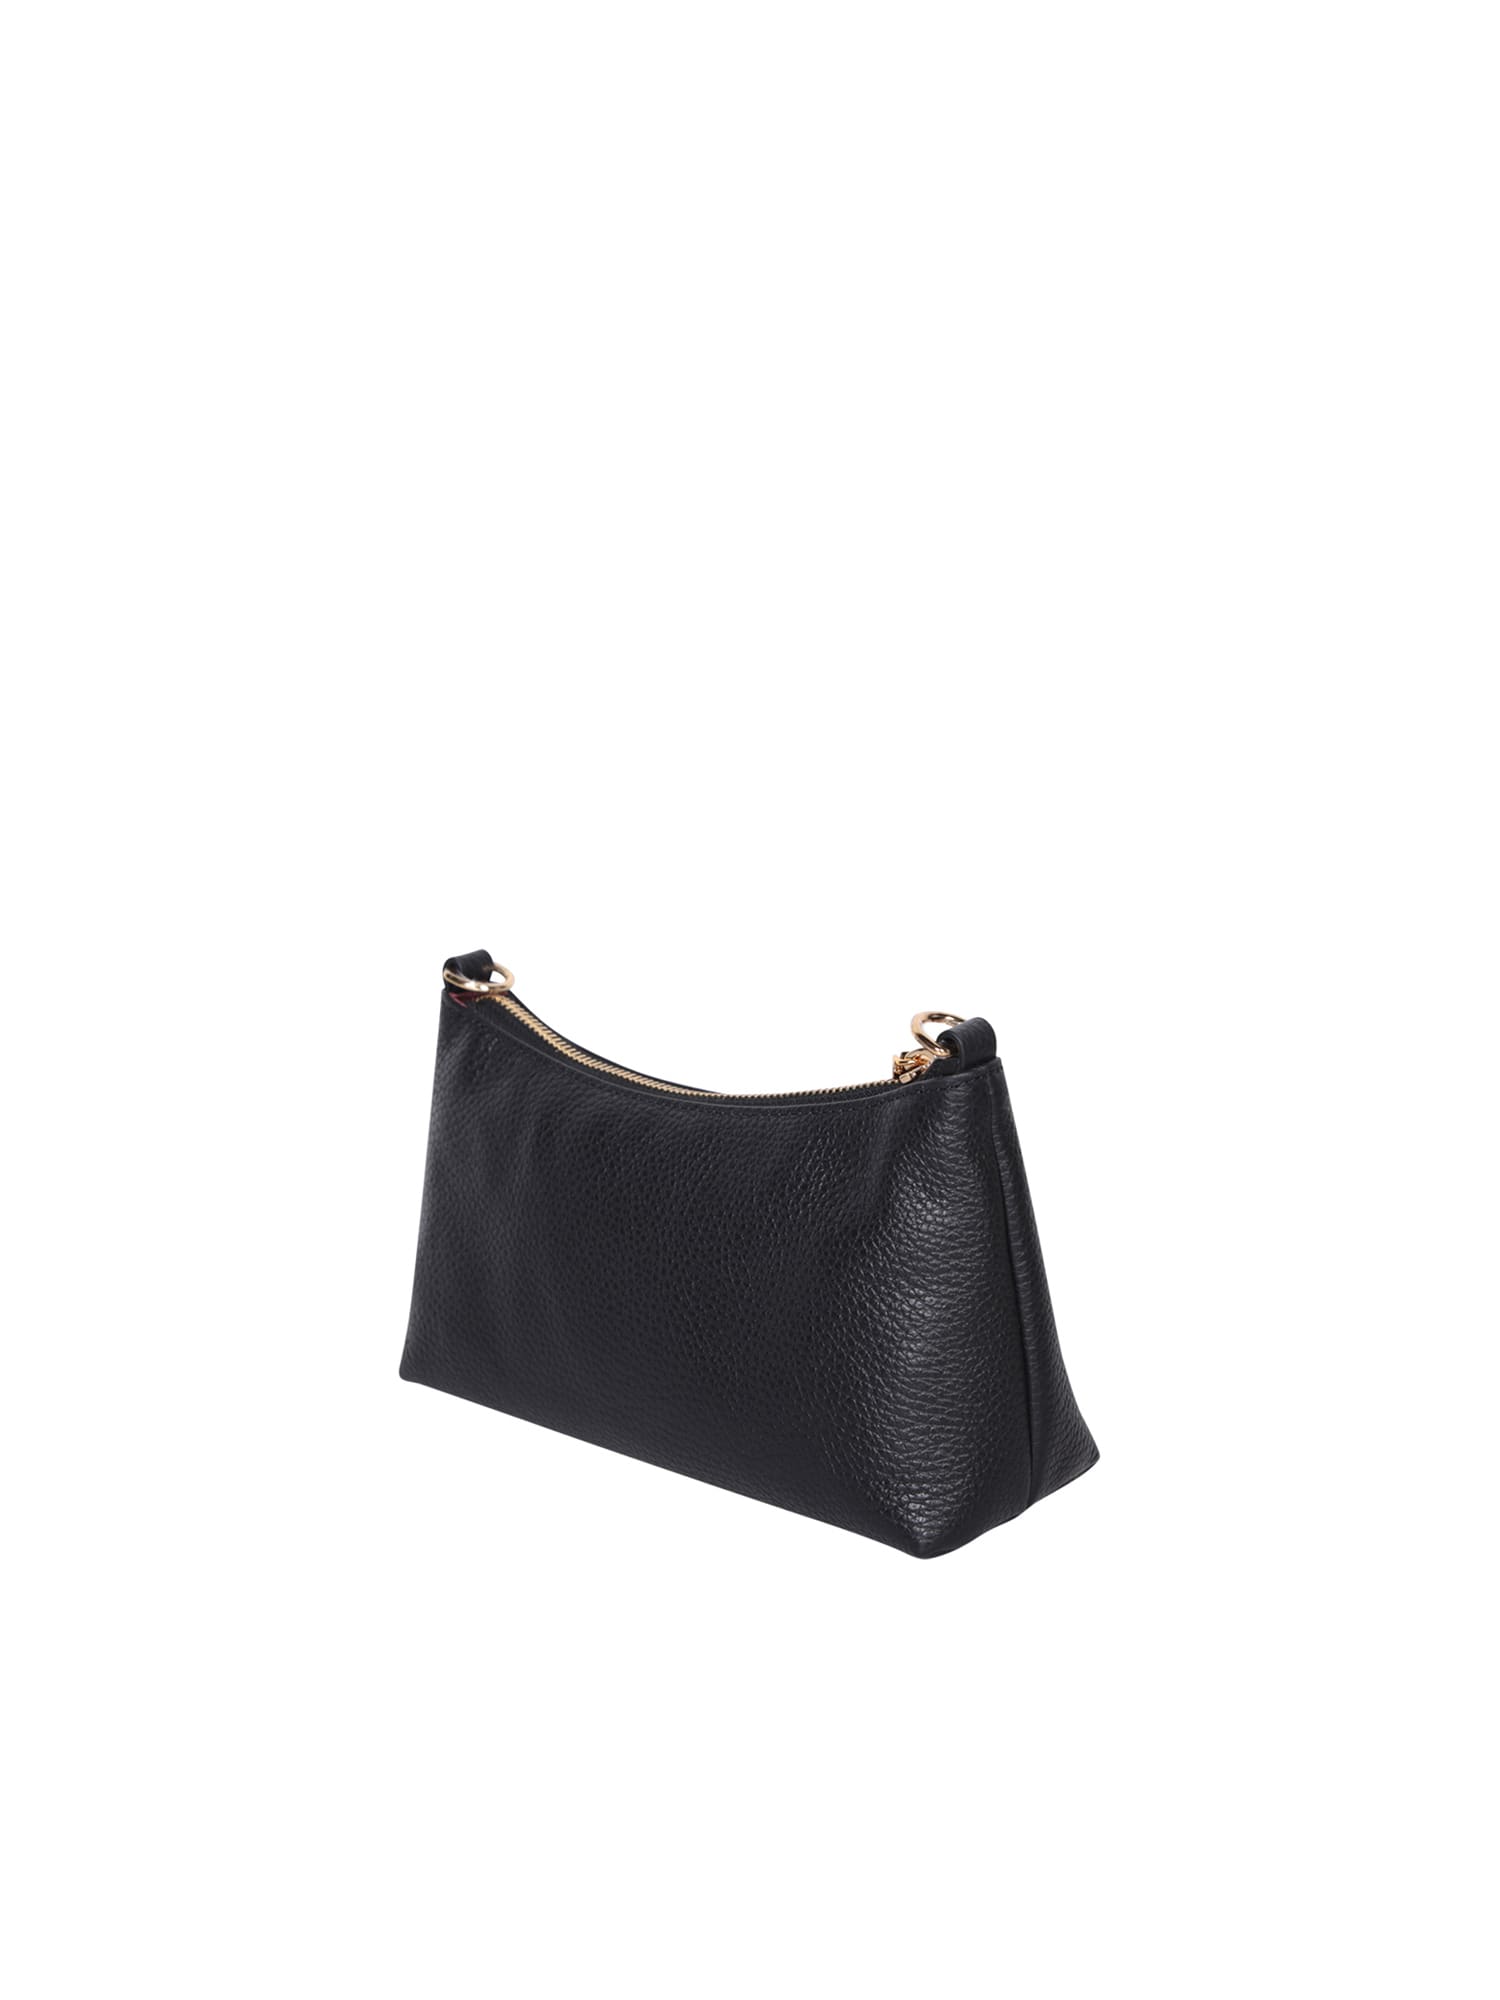 Shop Coccinelle Aura Black Leather Bag